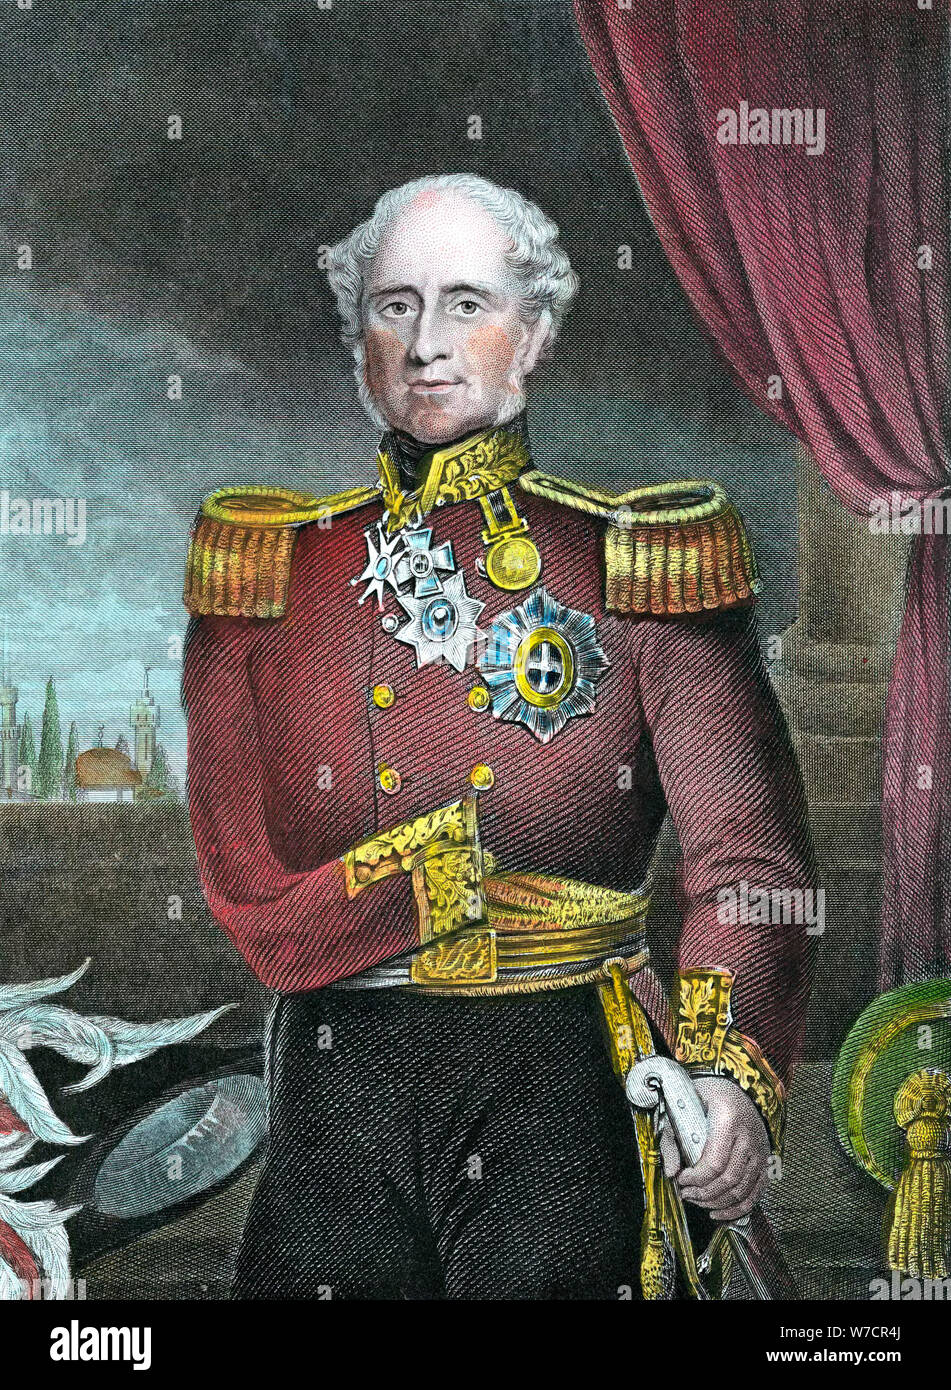 Fitzroy HJ Somerset, 1st Baron Raglan, British soldier, 19th century. Artist: Unknown Stock Photo